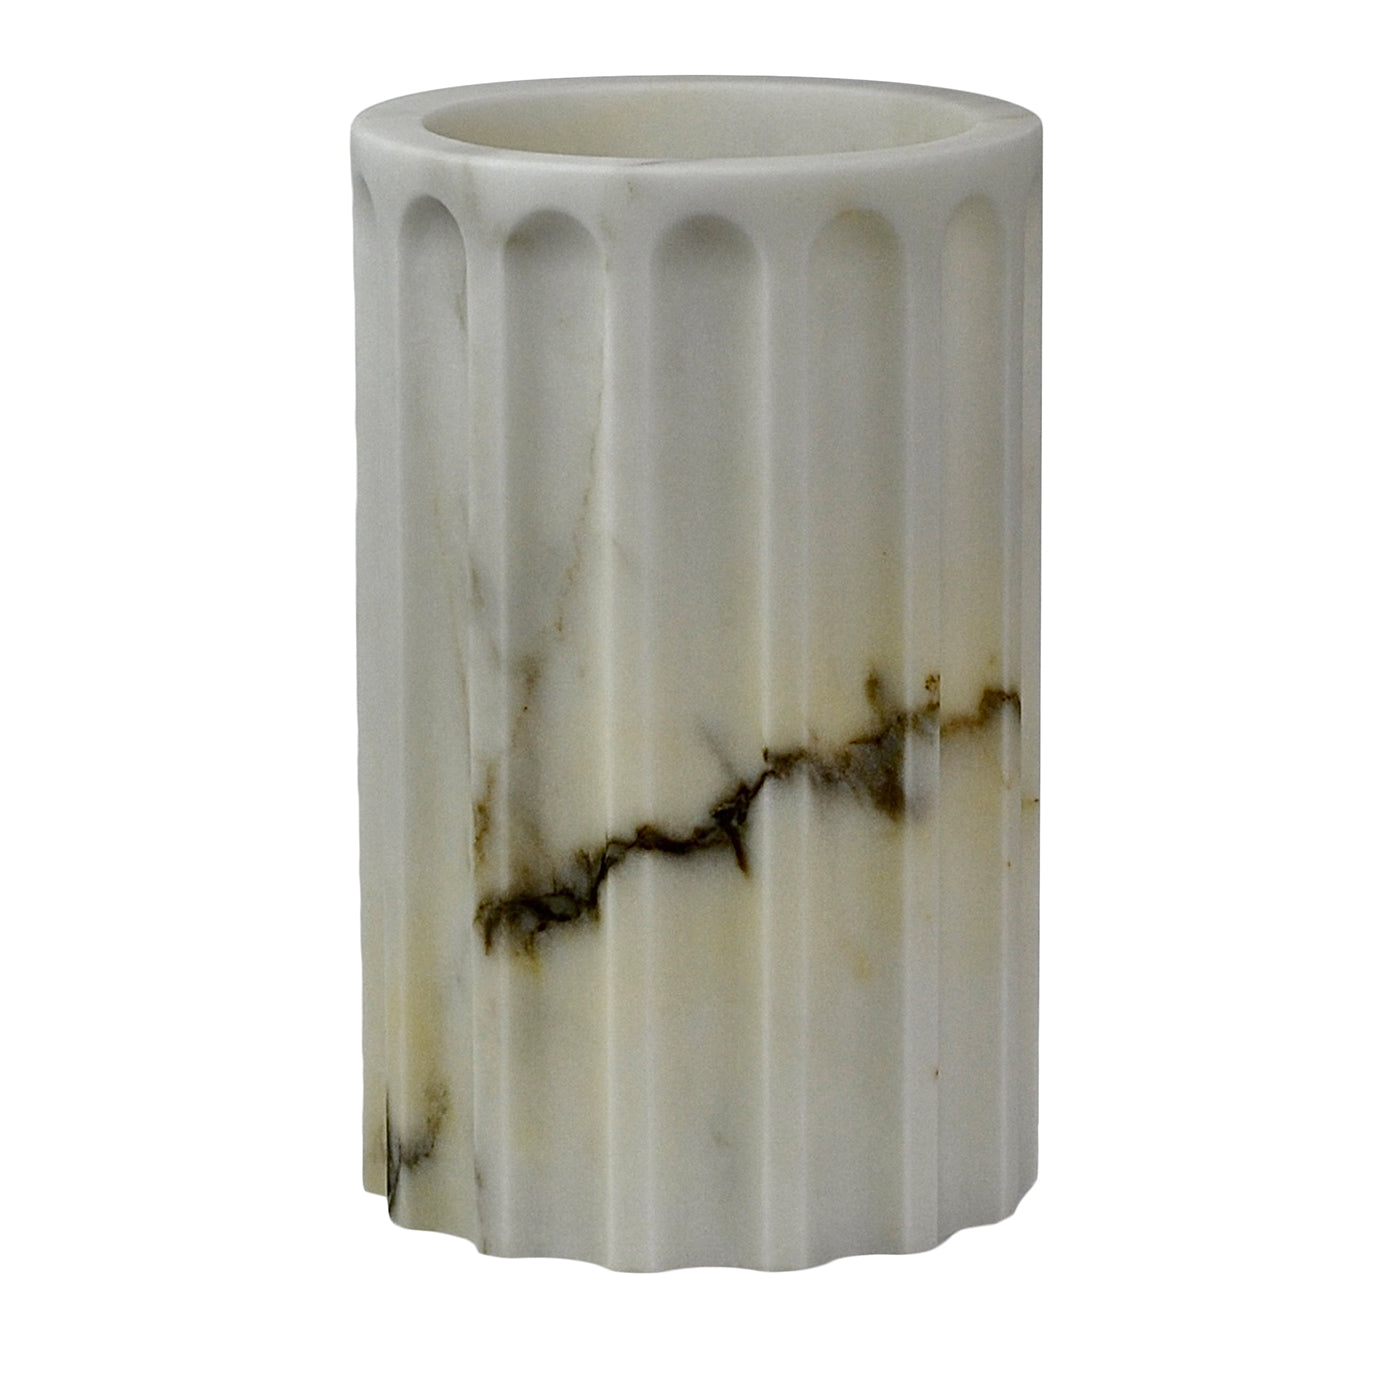 TAN Satin Paonazzo marble Column Vase - Main view